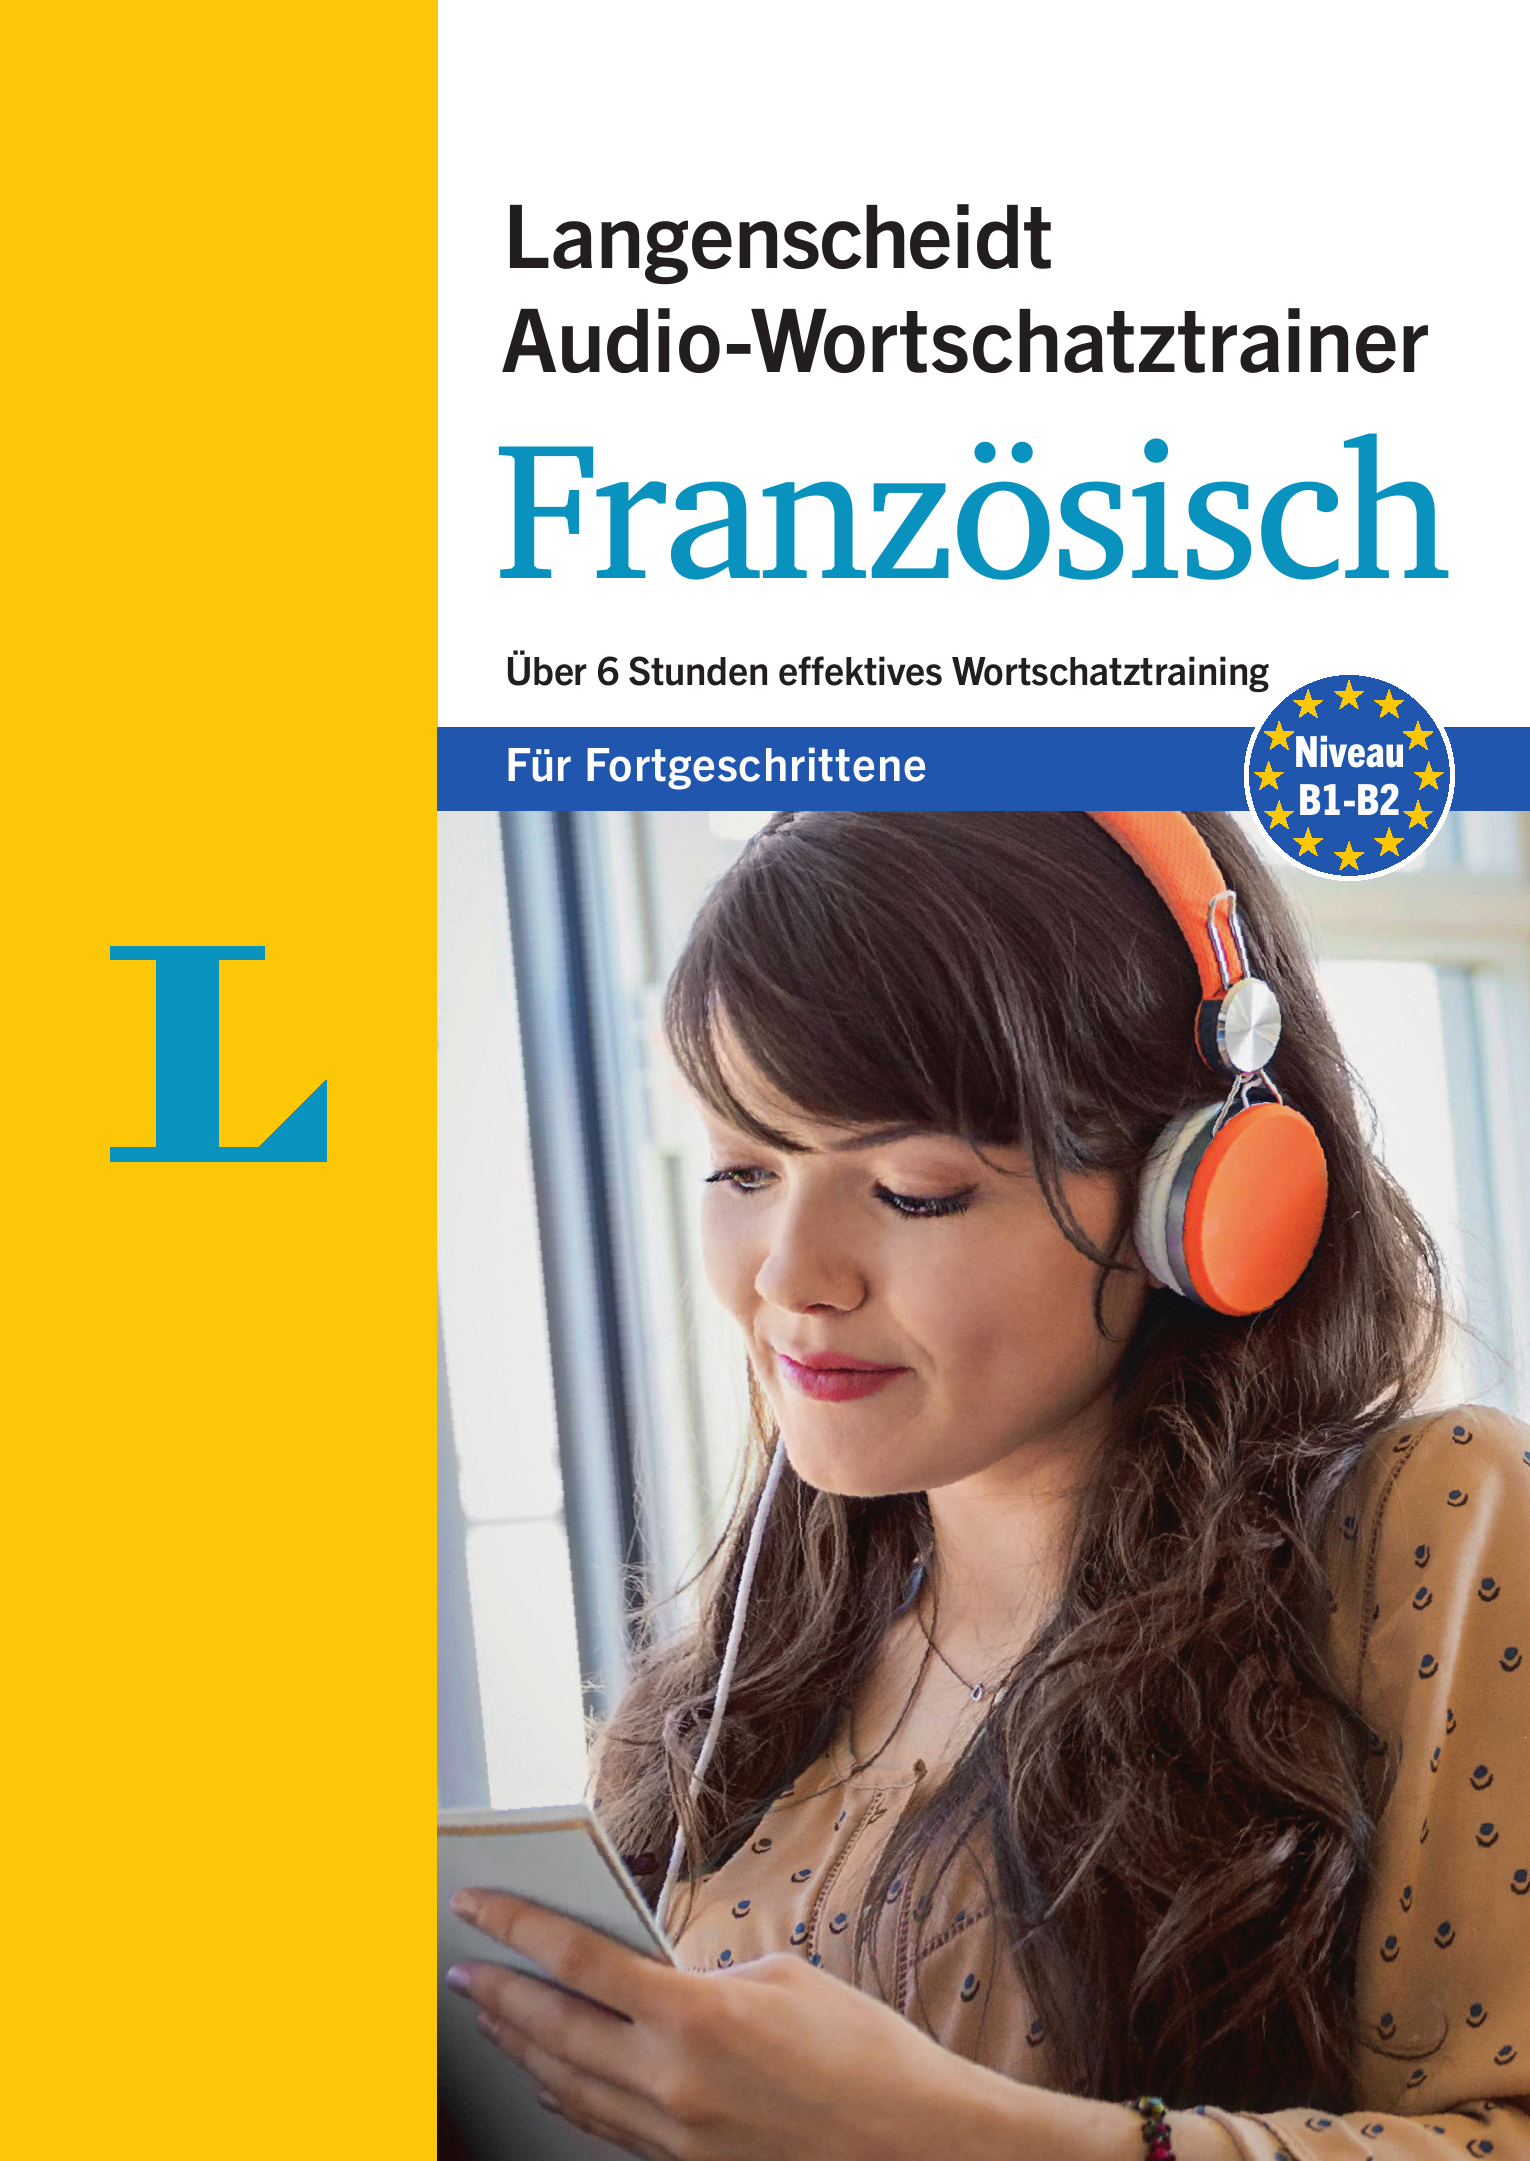 Langenscheidt Audio-Wortschatztrainer Französisch für Fortgeschrittene